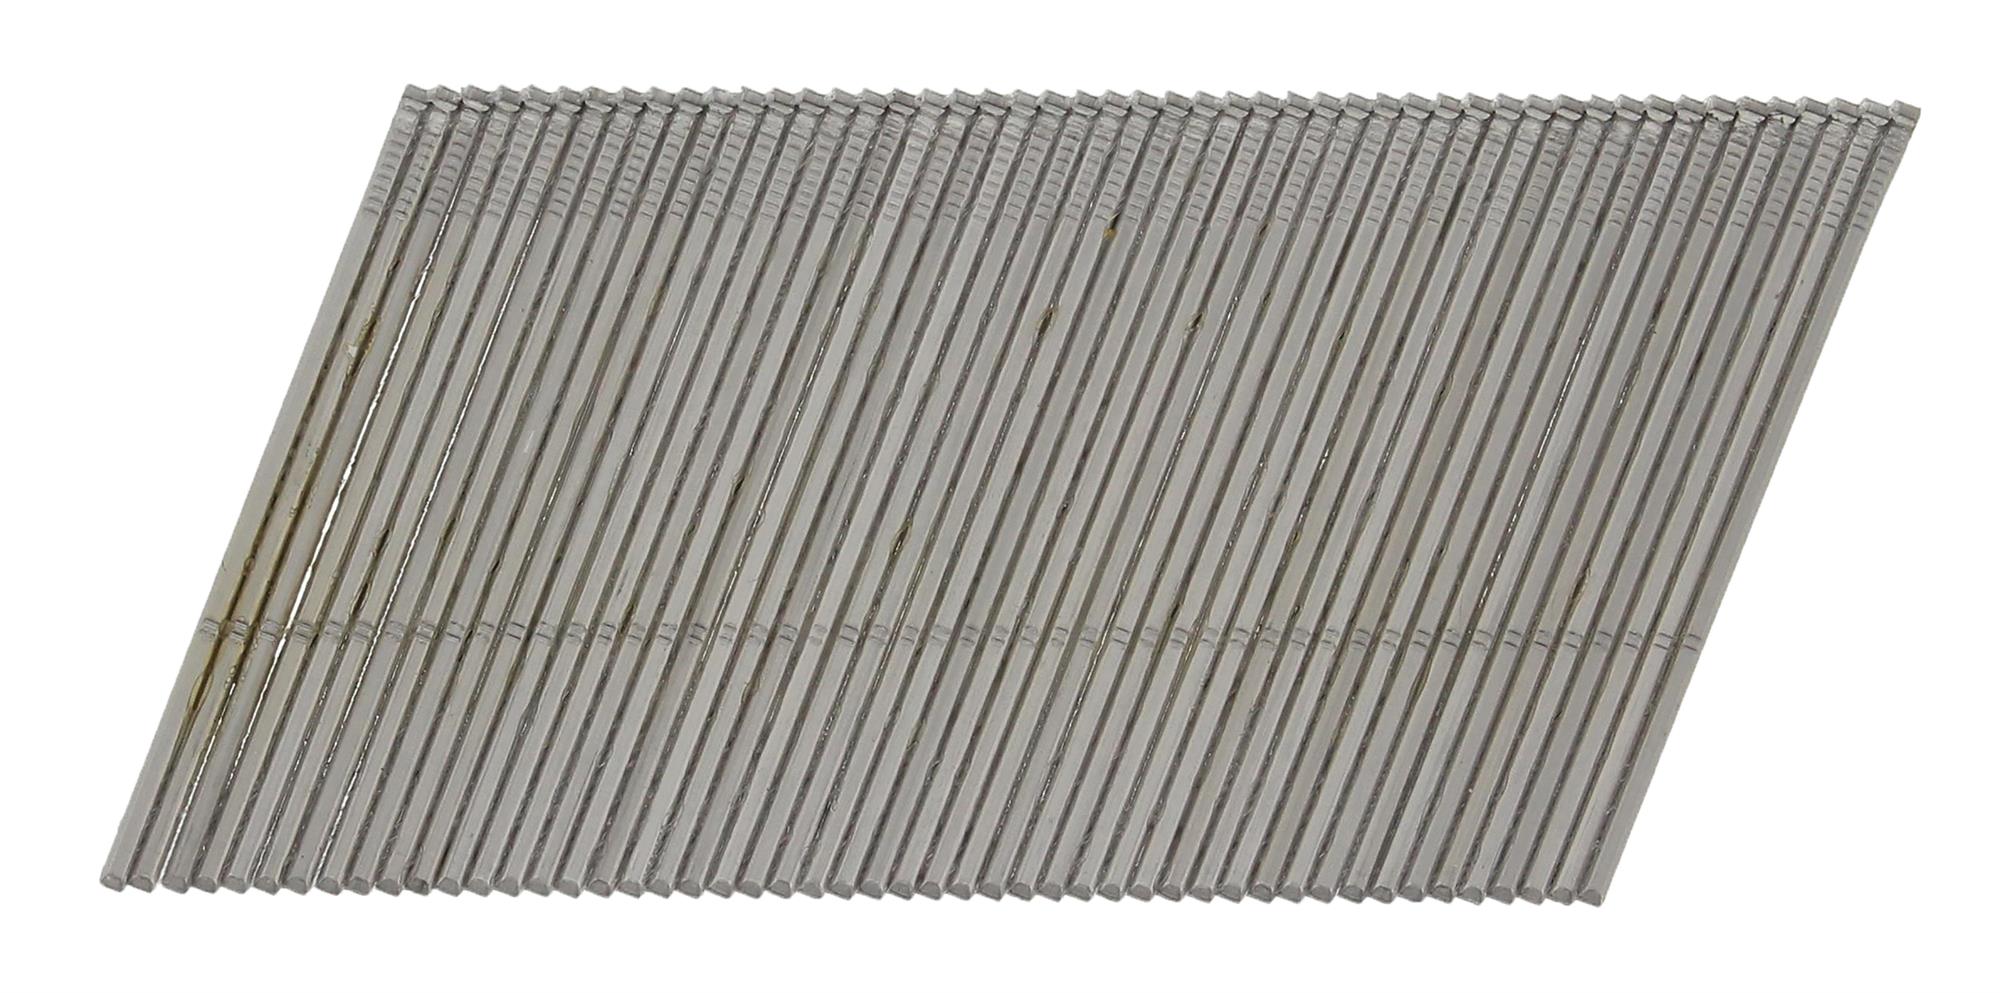 Hřebíky nerezové Paslode AF16 20° hladké 1,6×50 mm 2 000 ks